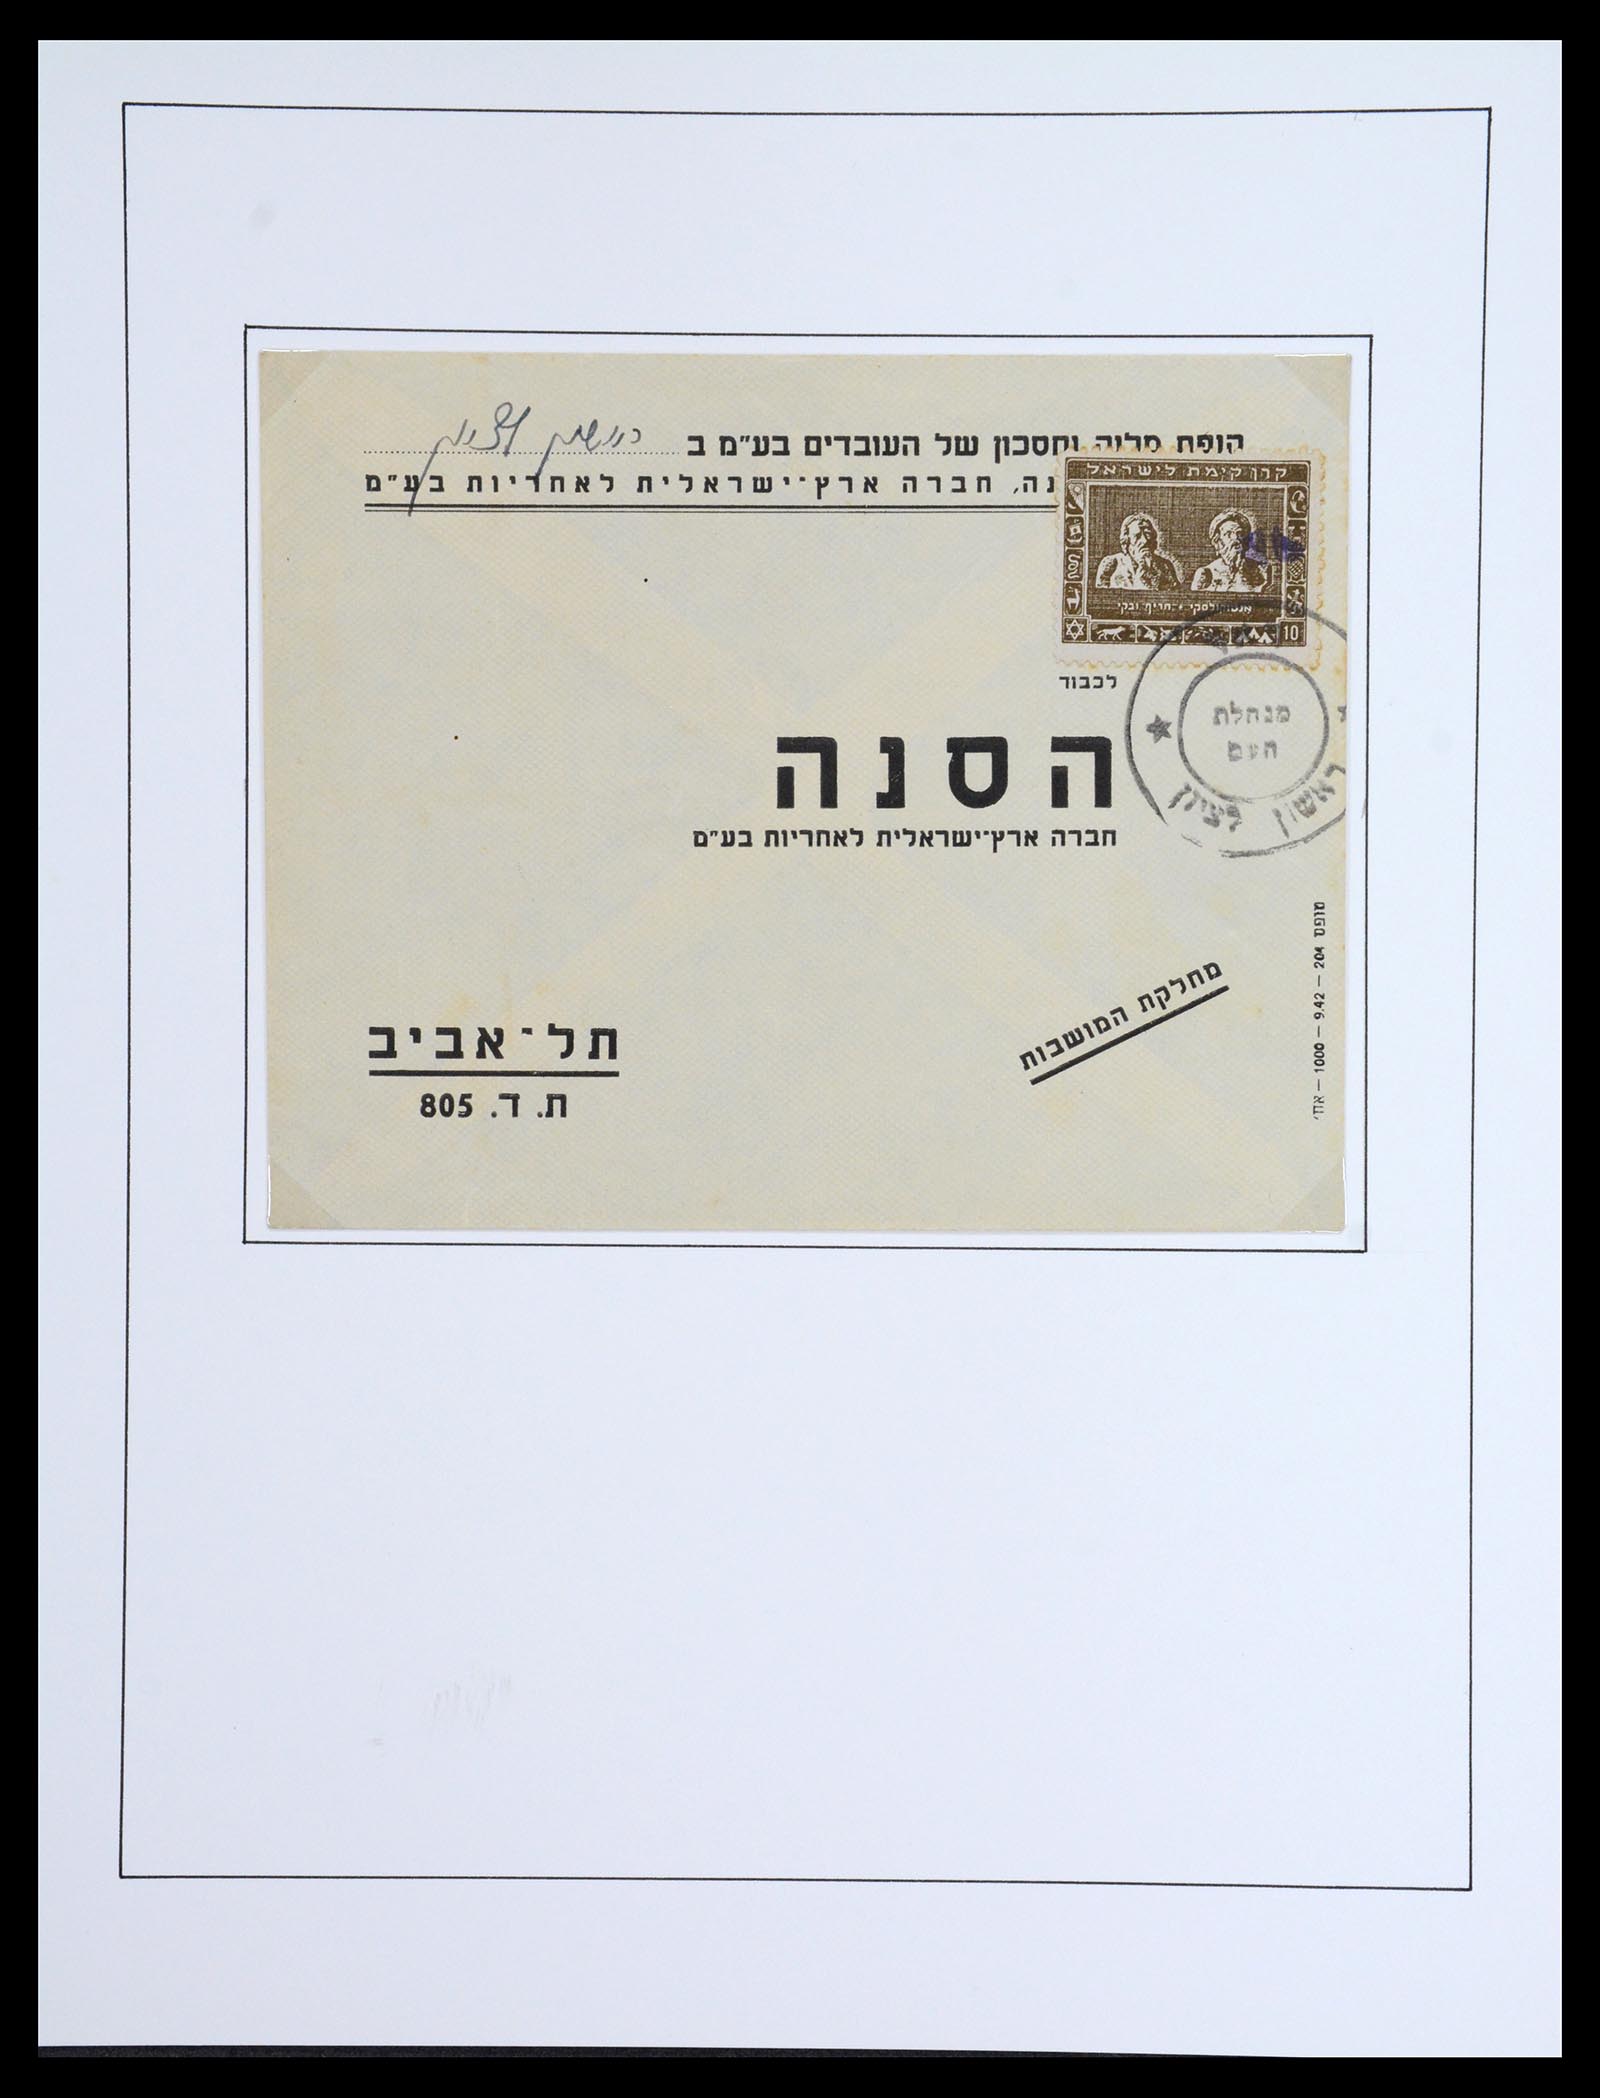 36495 026 - Stamp collection 36495 Israël interim brieven 1948.